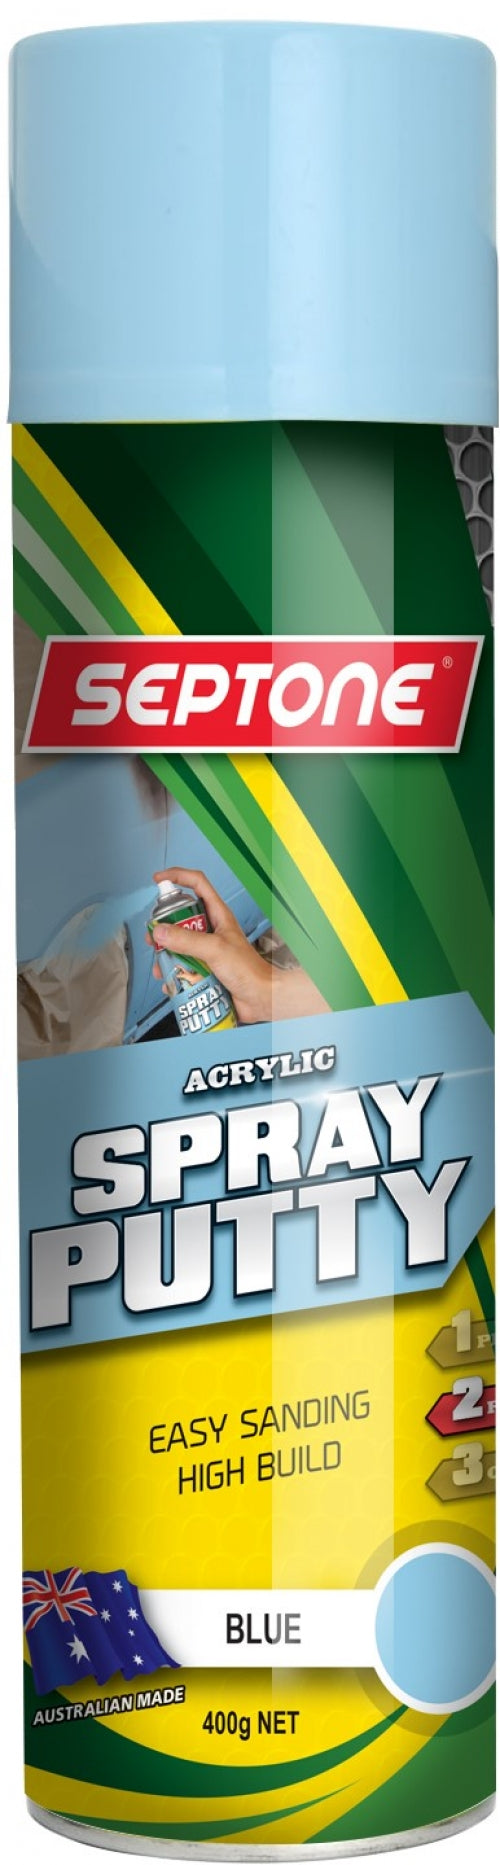 SEPTONE Spray Putty